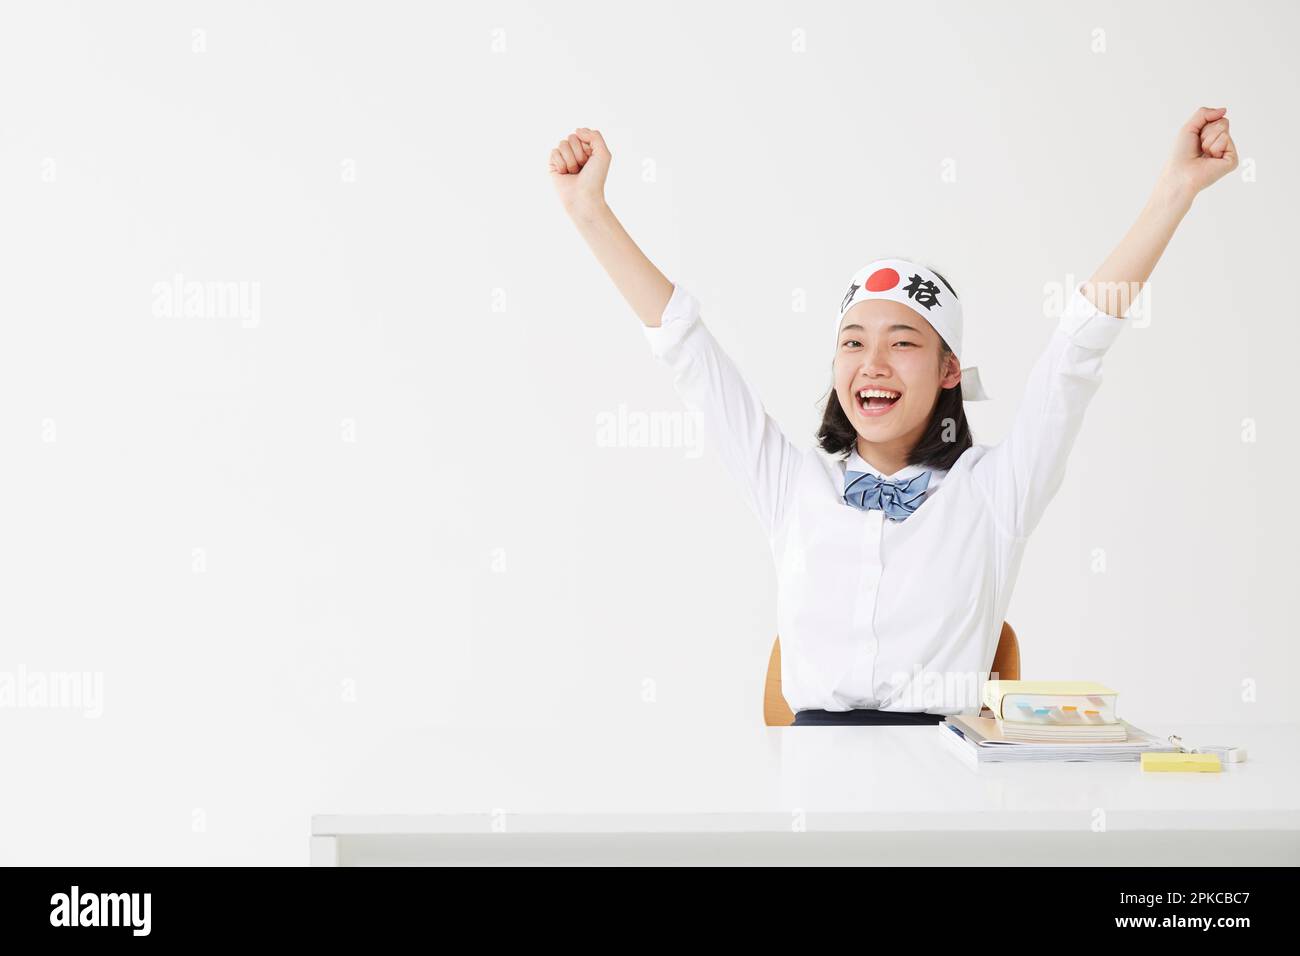 Ein Highschool-Mädchen hob ihre Arme, während sie ein Hachimaki trug Stockfoto